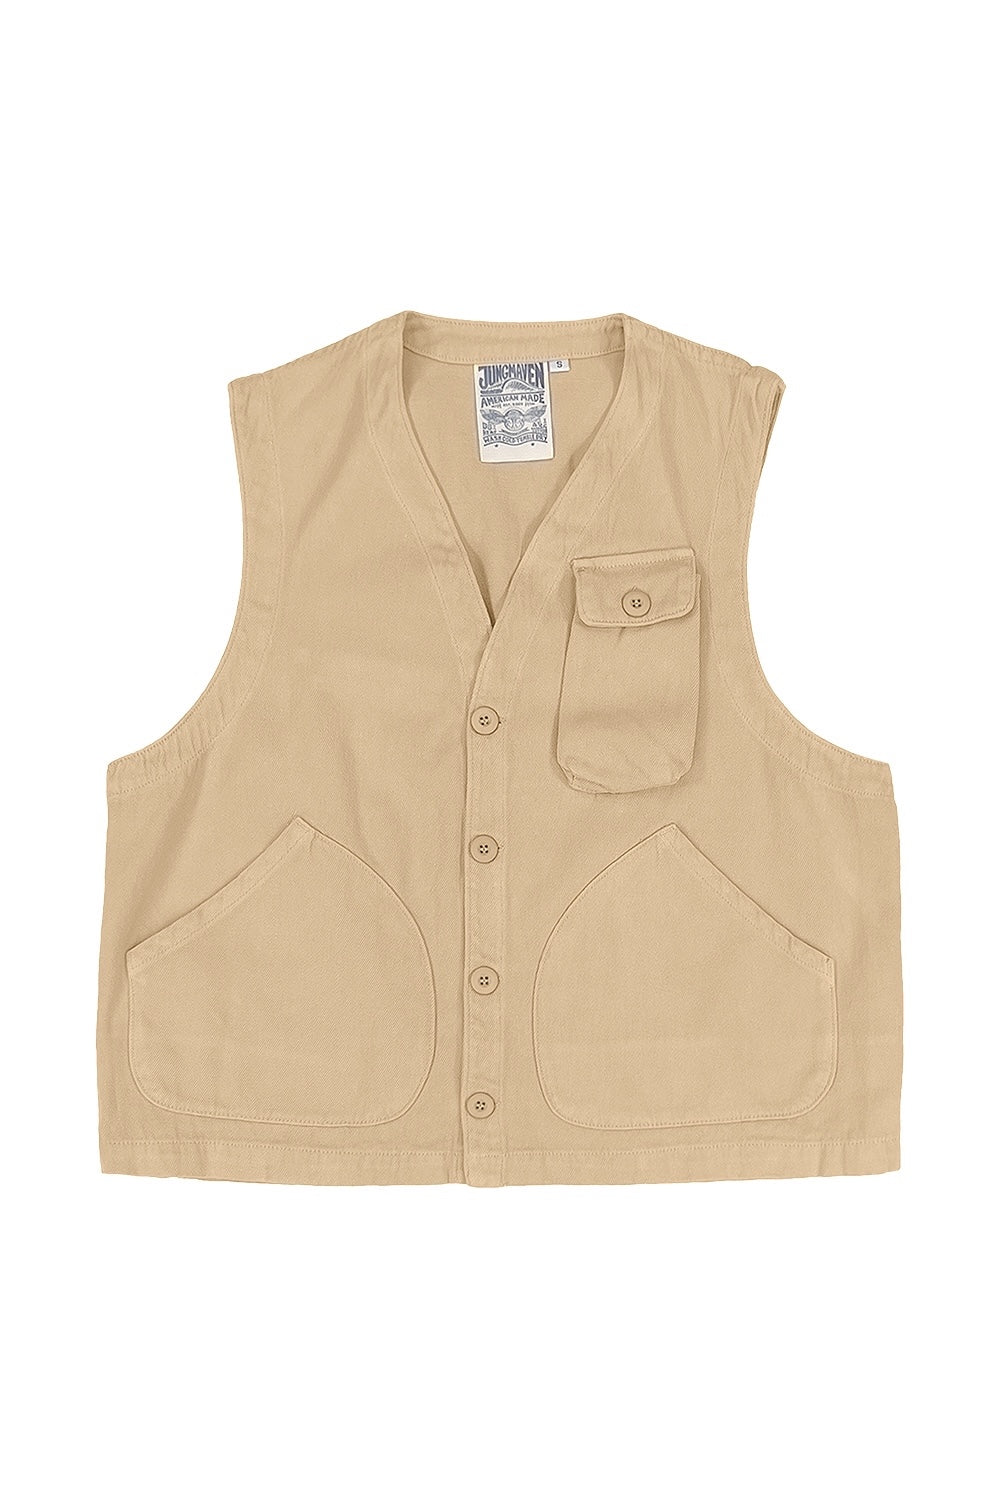 Falcon Vest | Jungmaven Hemp Clothing & Accessories / Color: Oat Milk